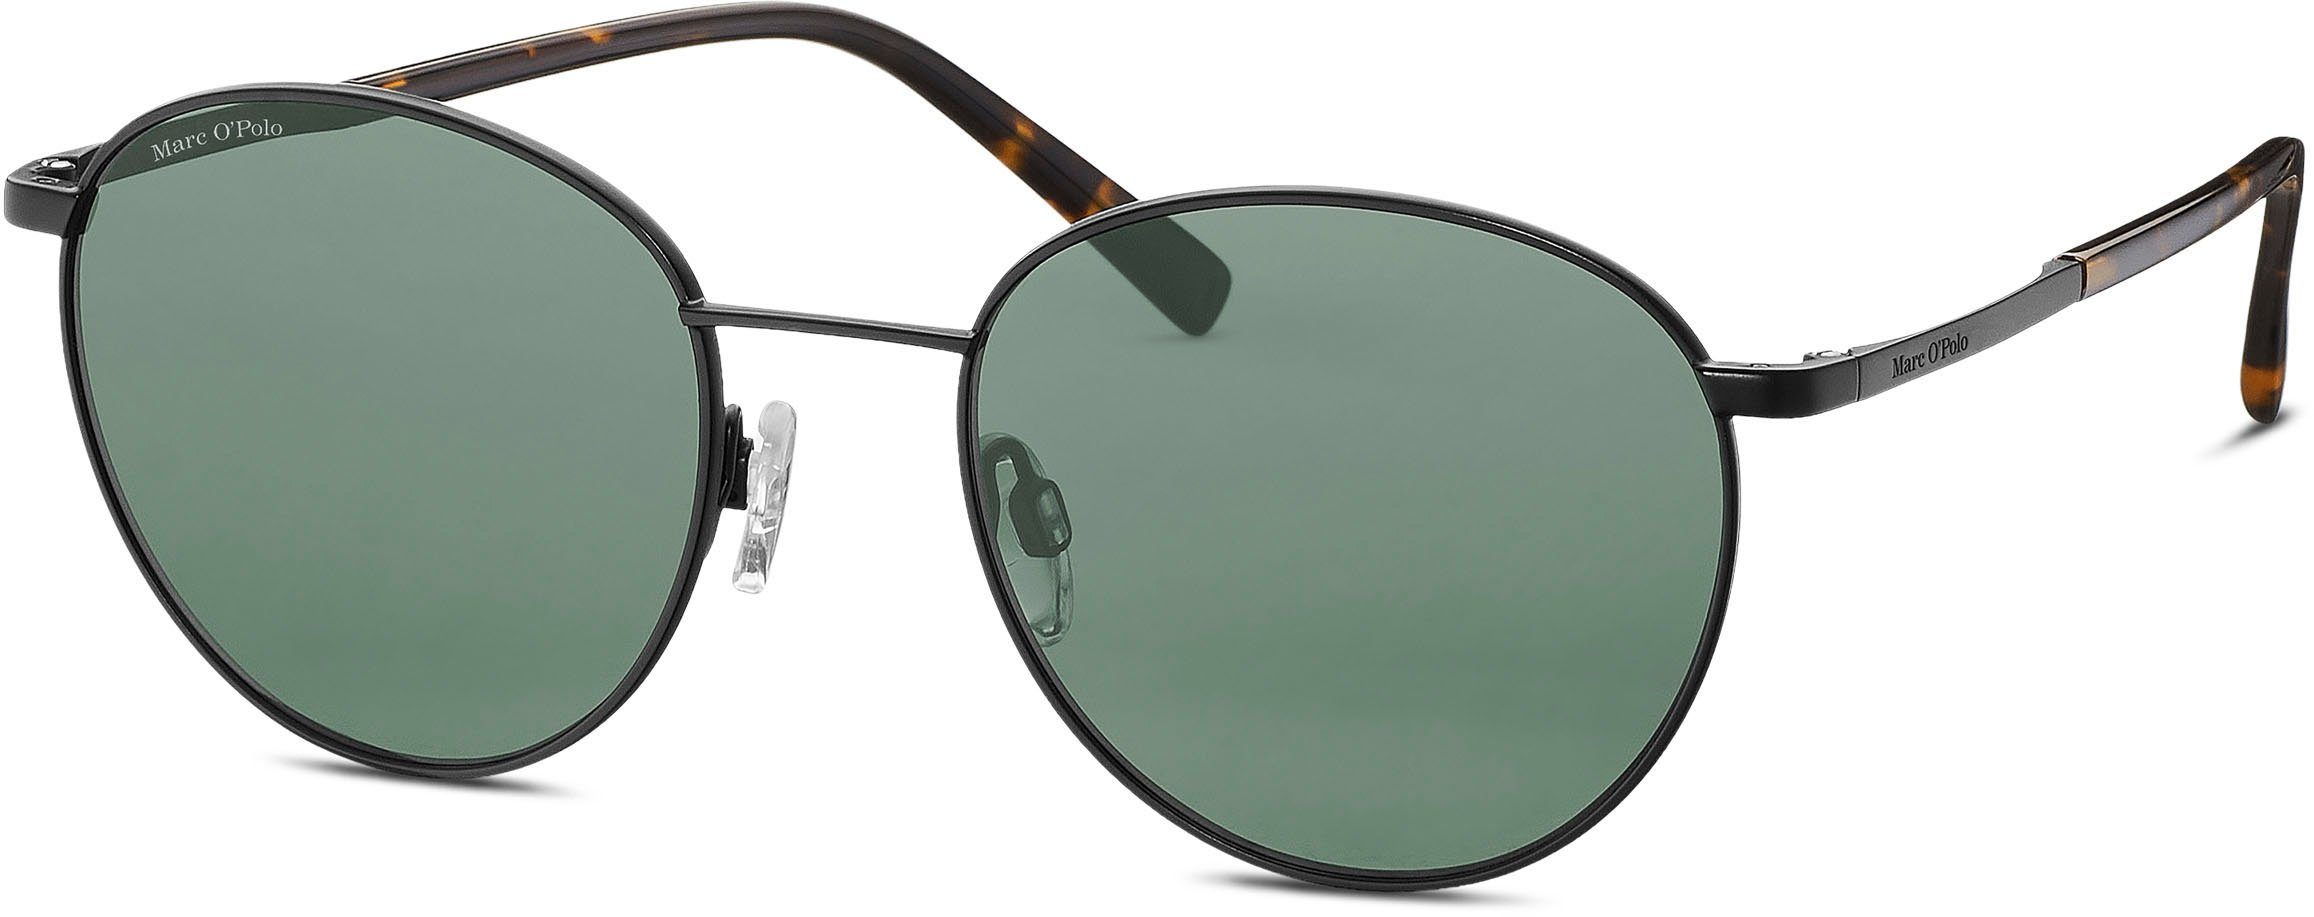 Fachgeschäft für neue Produkte! Marc O'Polo Sonnenbrille Modell schwarz-grün 505112 Panto-Form